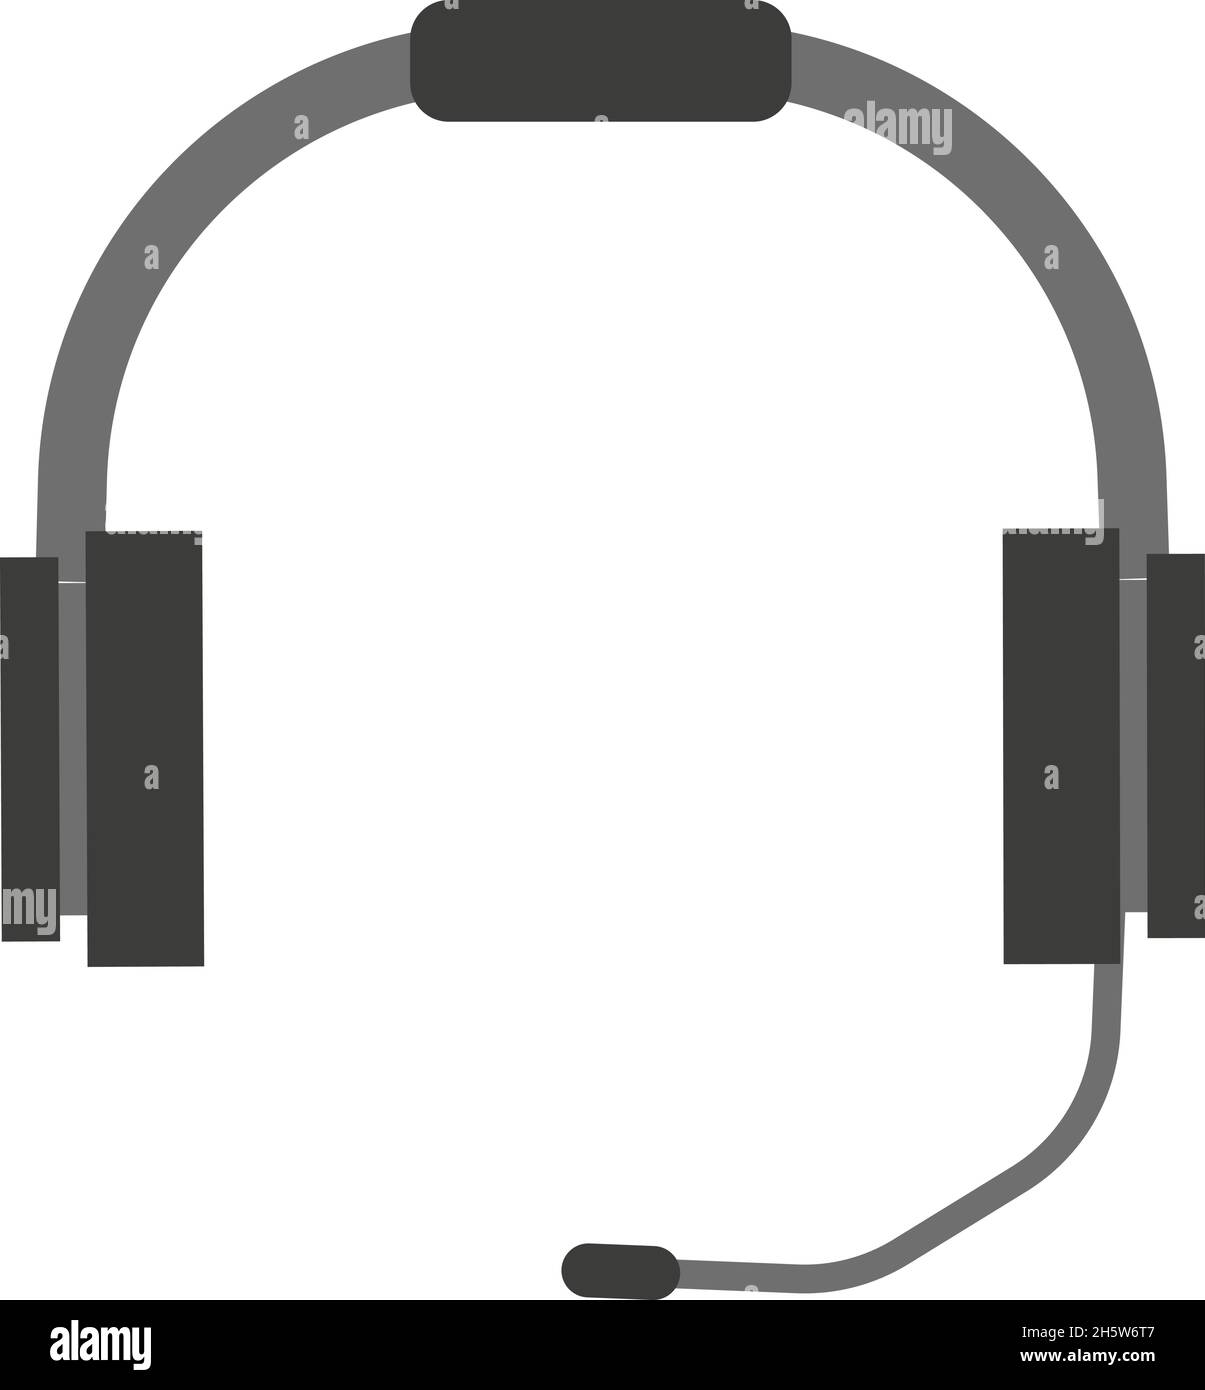 Kopfhörer und Mikrofon technische Unterstützung in flachem Stil, Vektor Stock Vektor